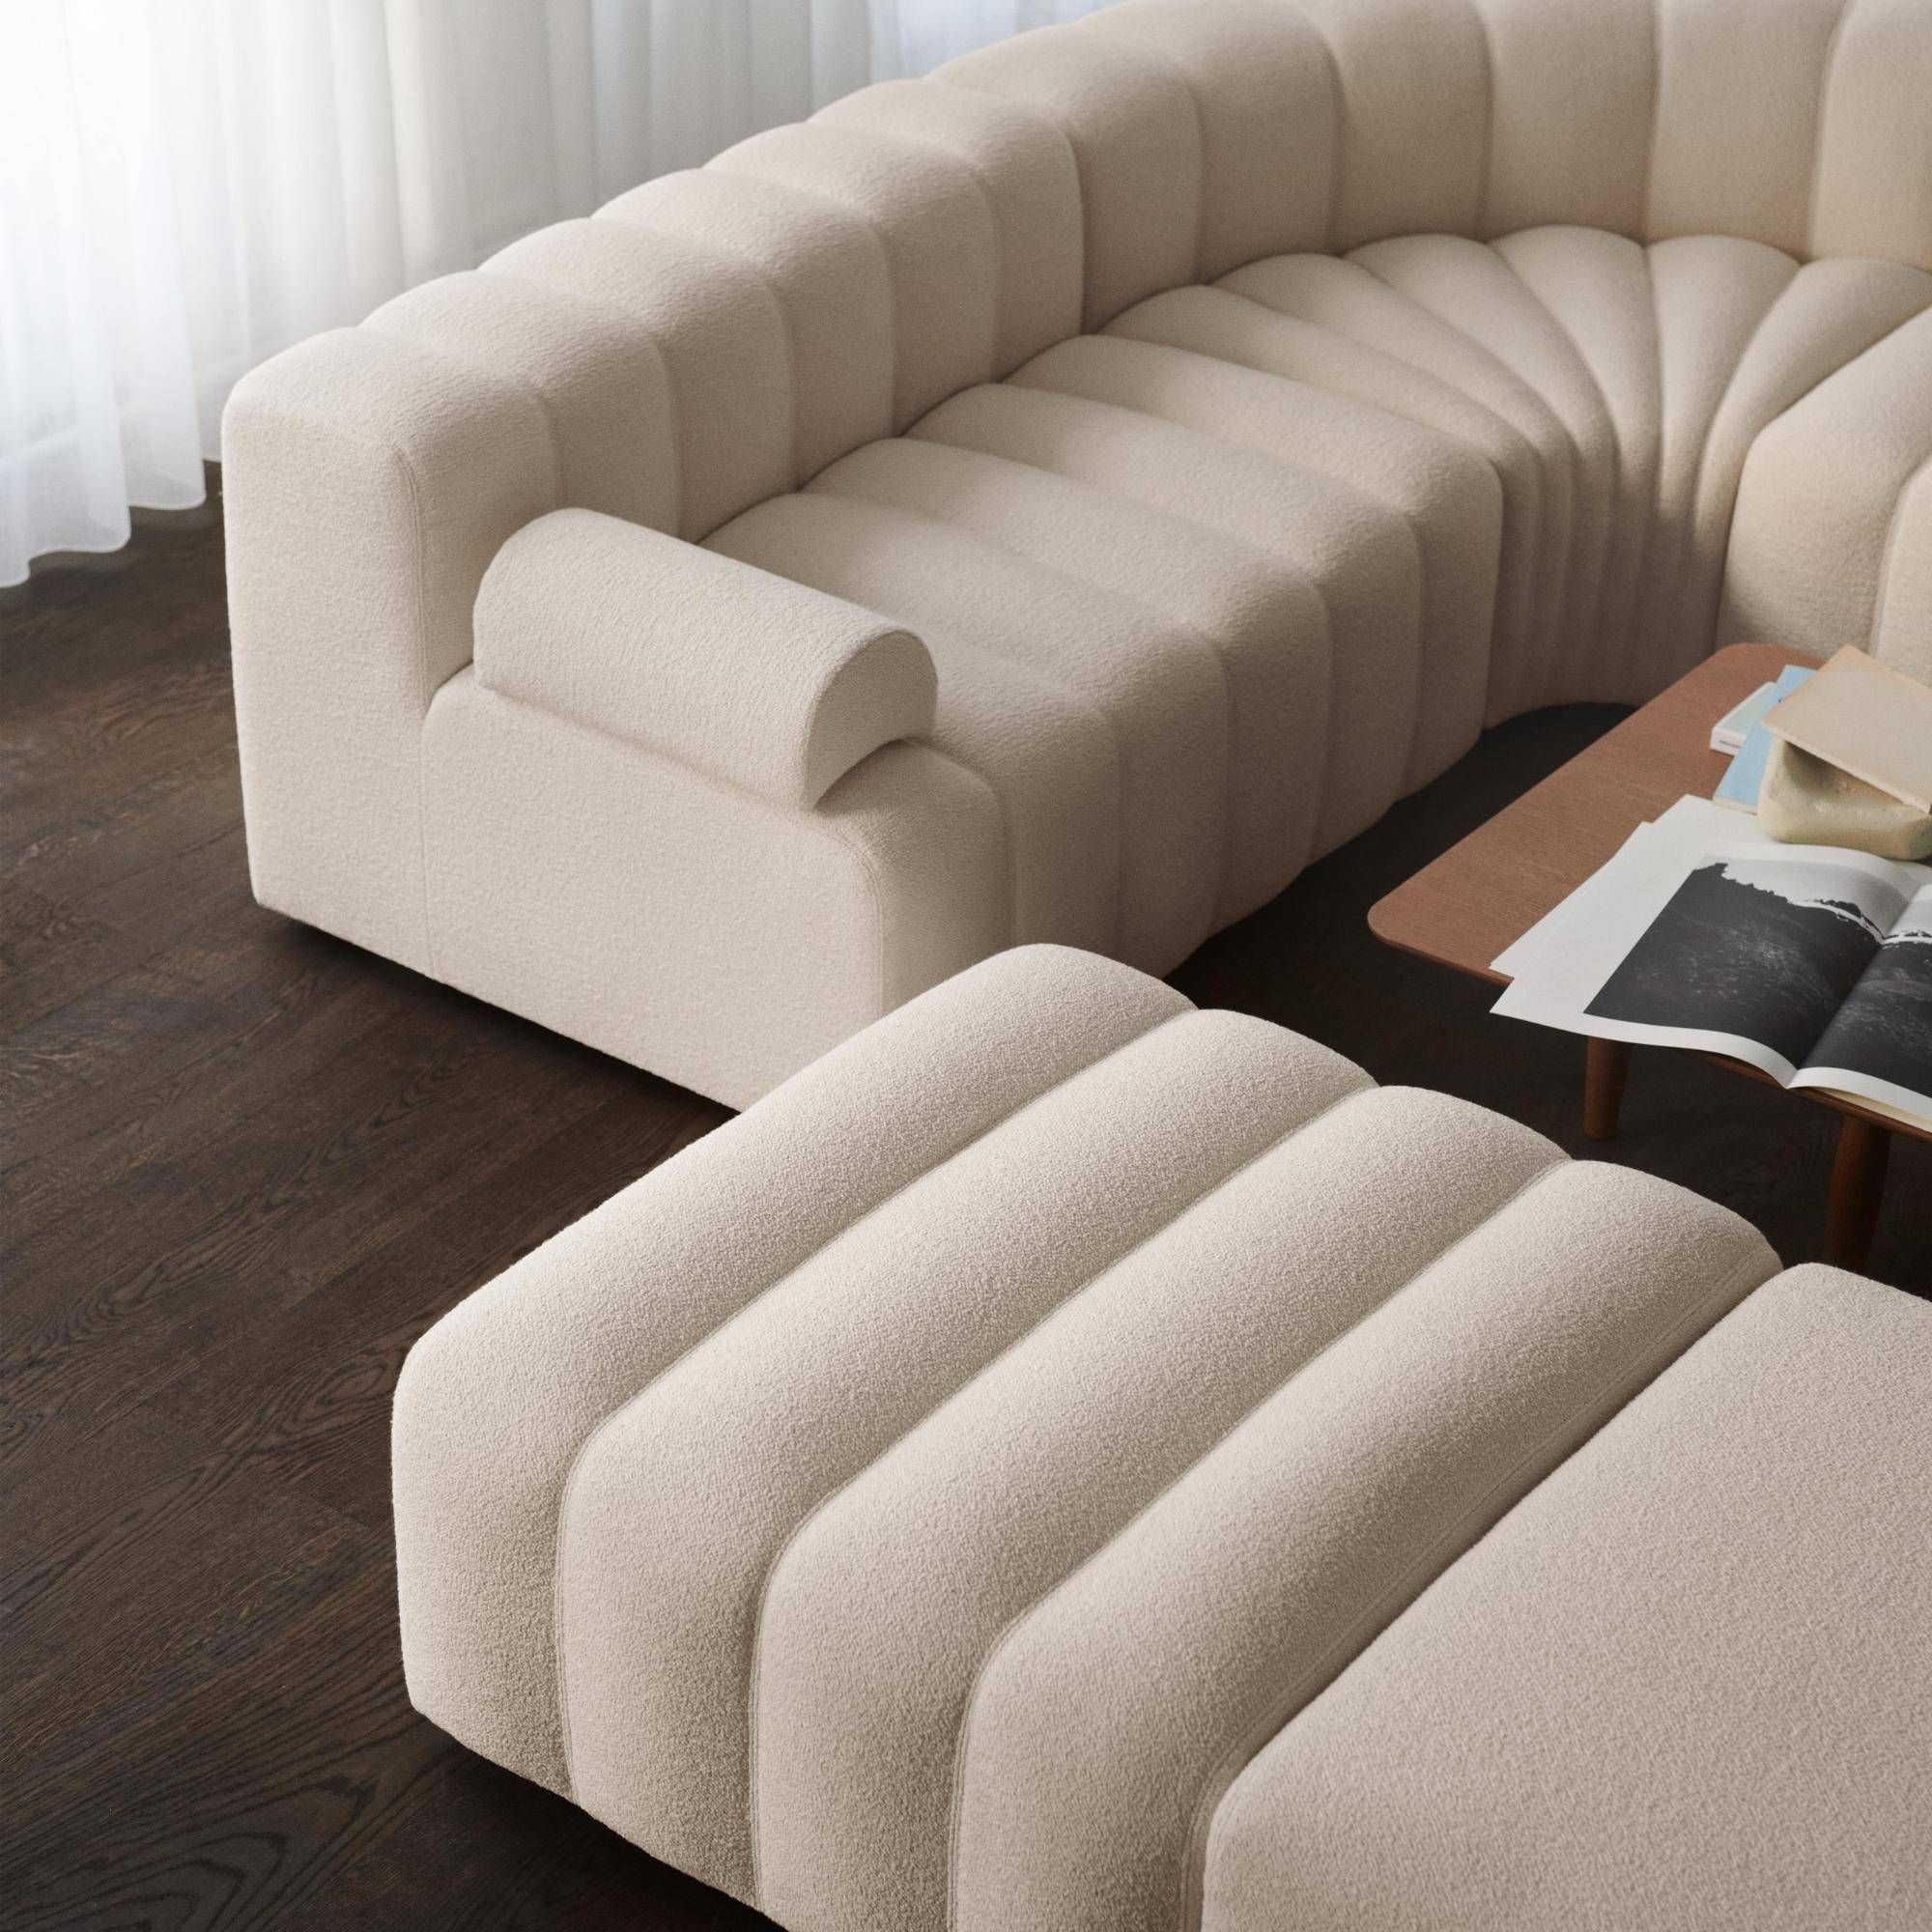 Exquisite Designs of Sofa Sets